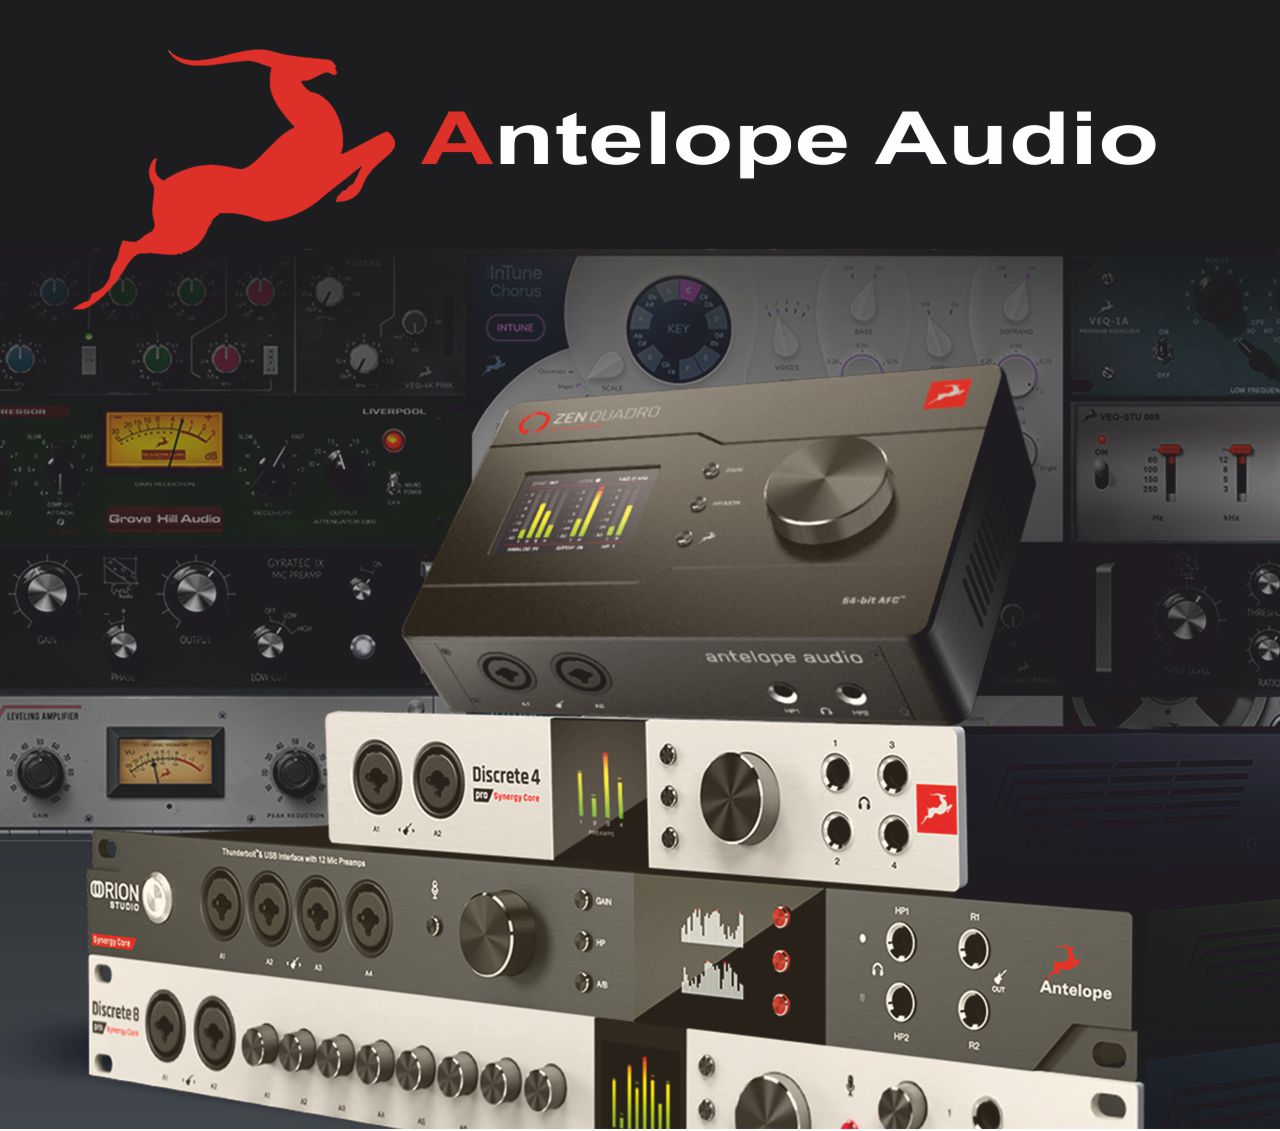 Ofertas Antelope Audio con Nativos GRATIS